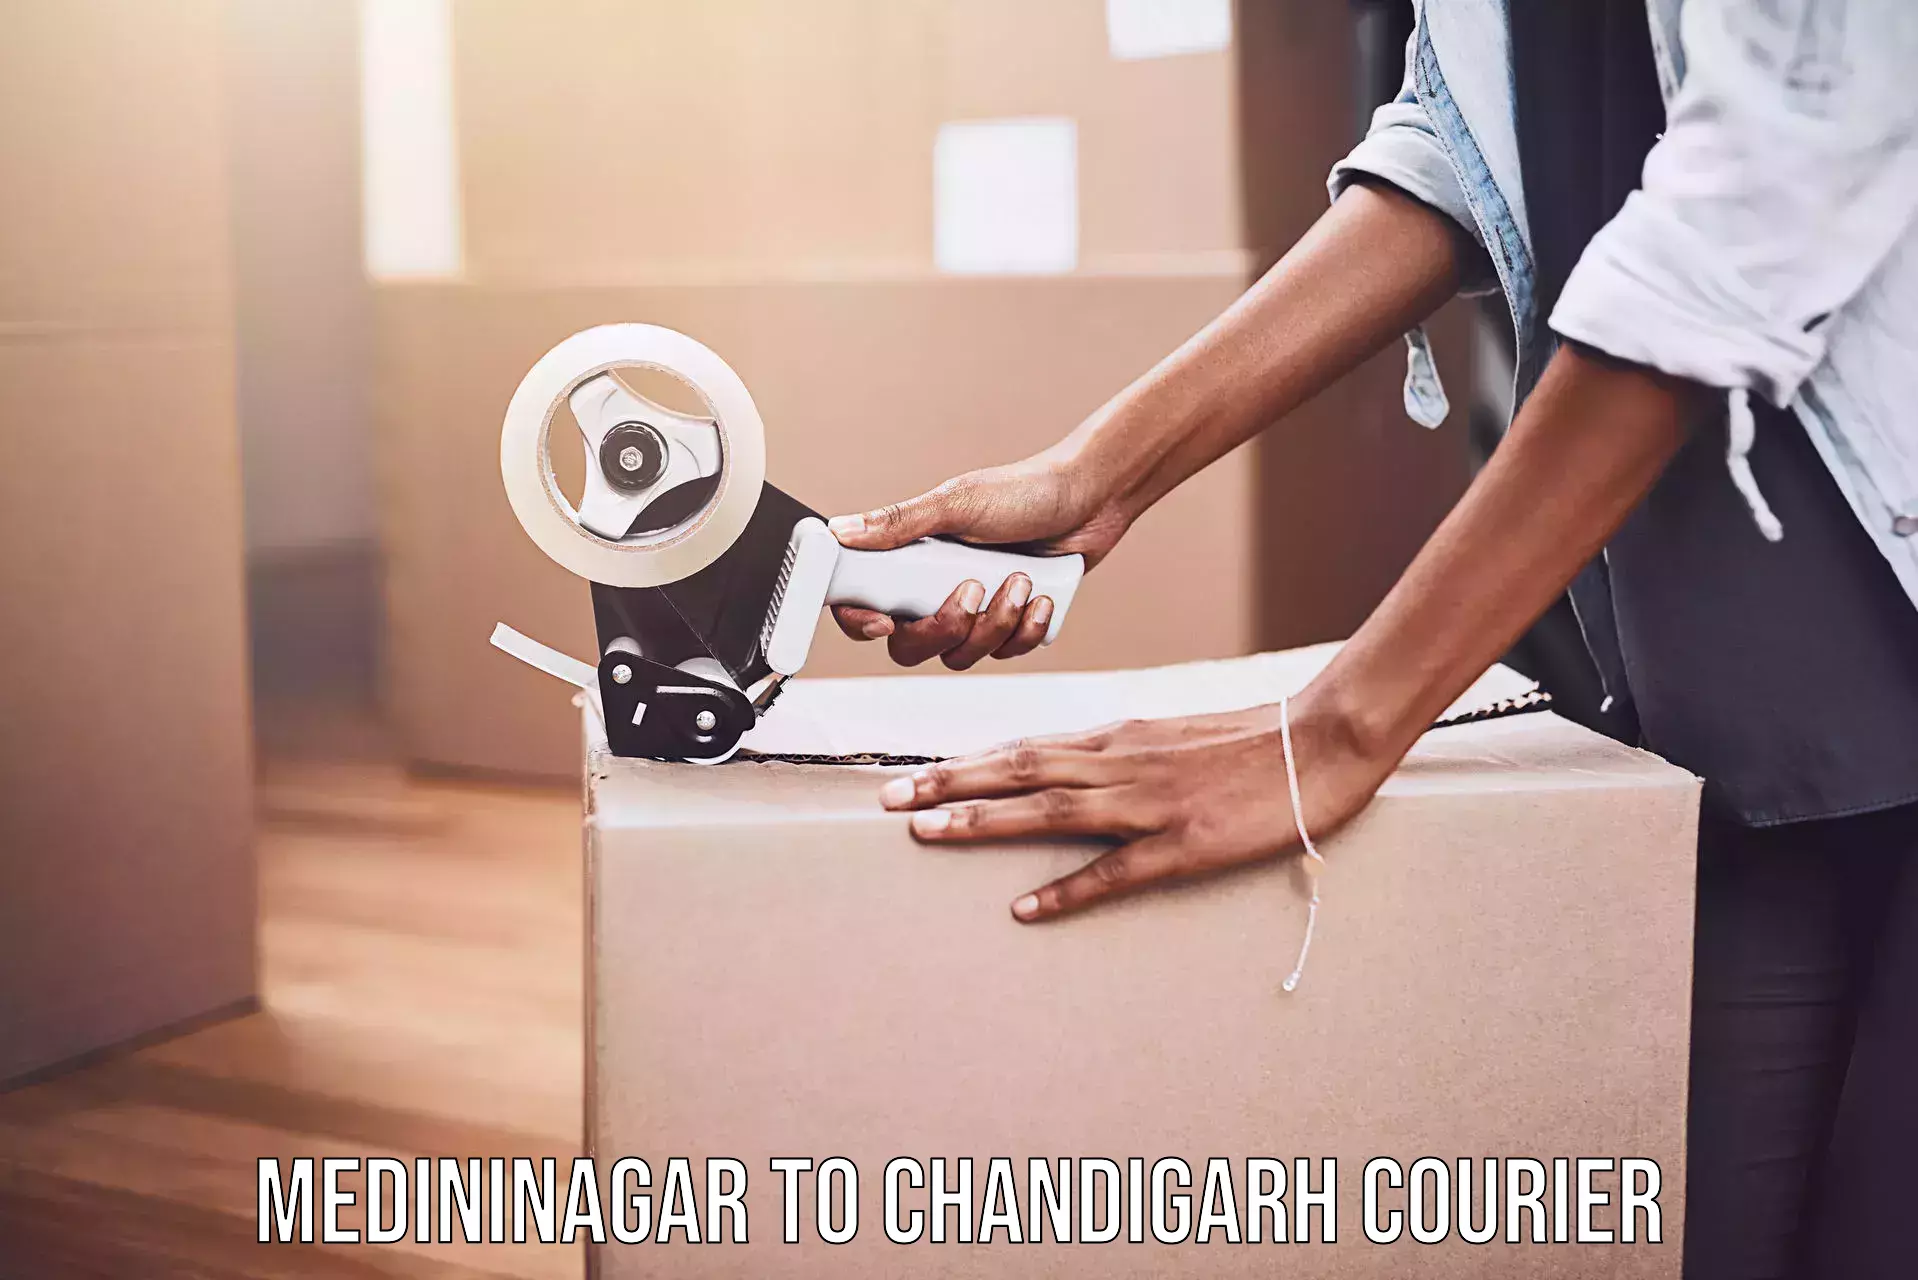 Quick dispatch service in Medininagar to Chandigarh